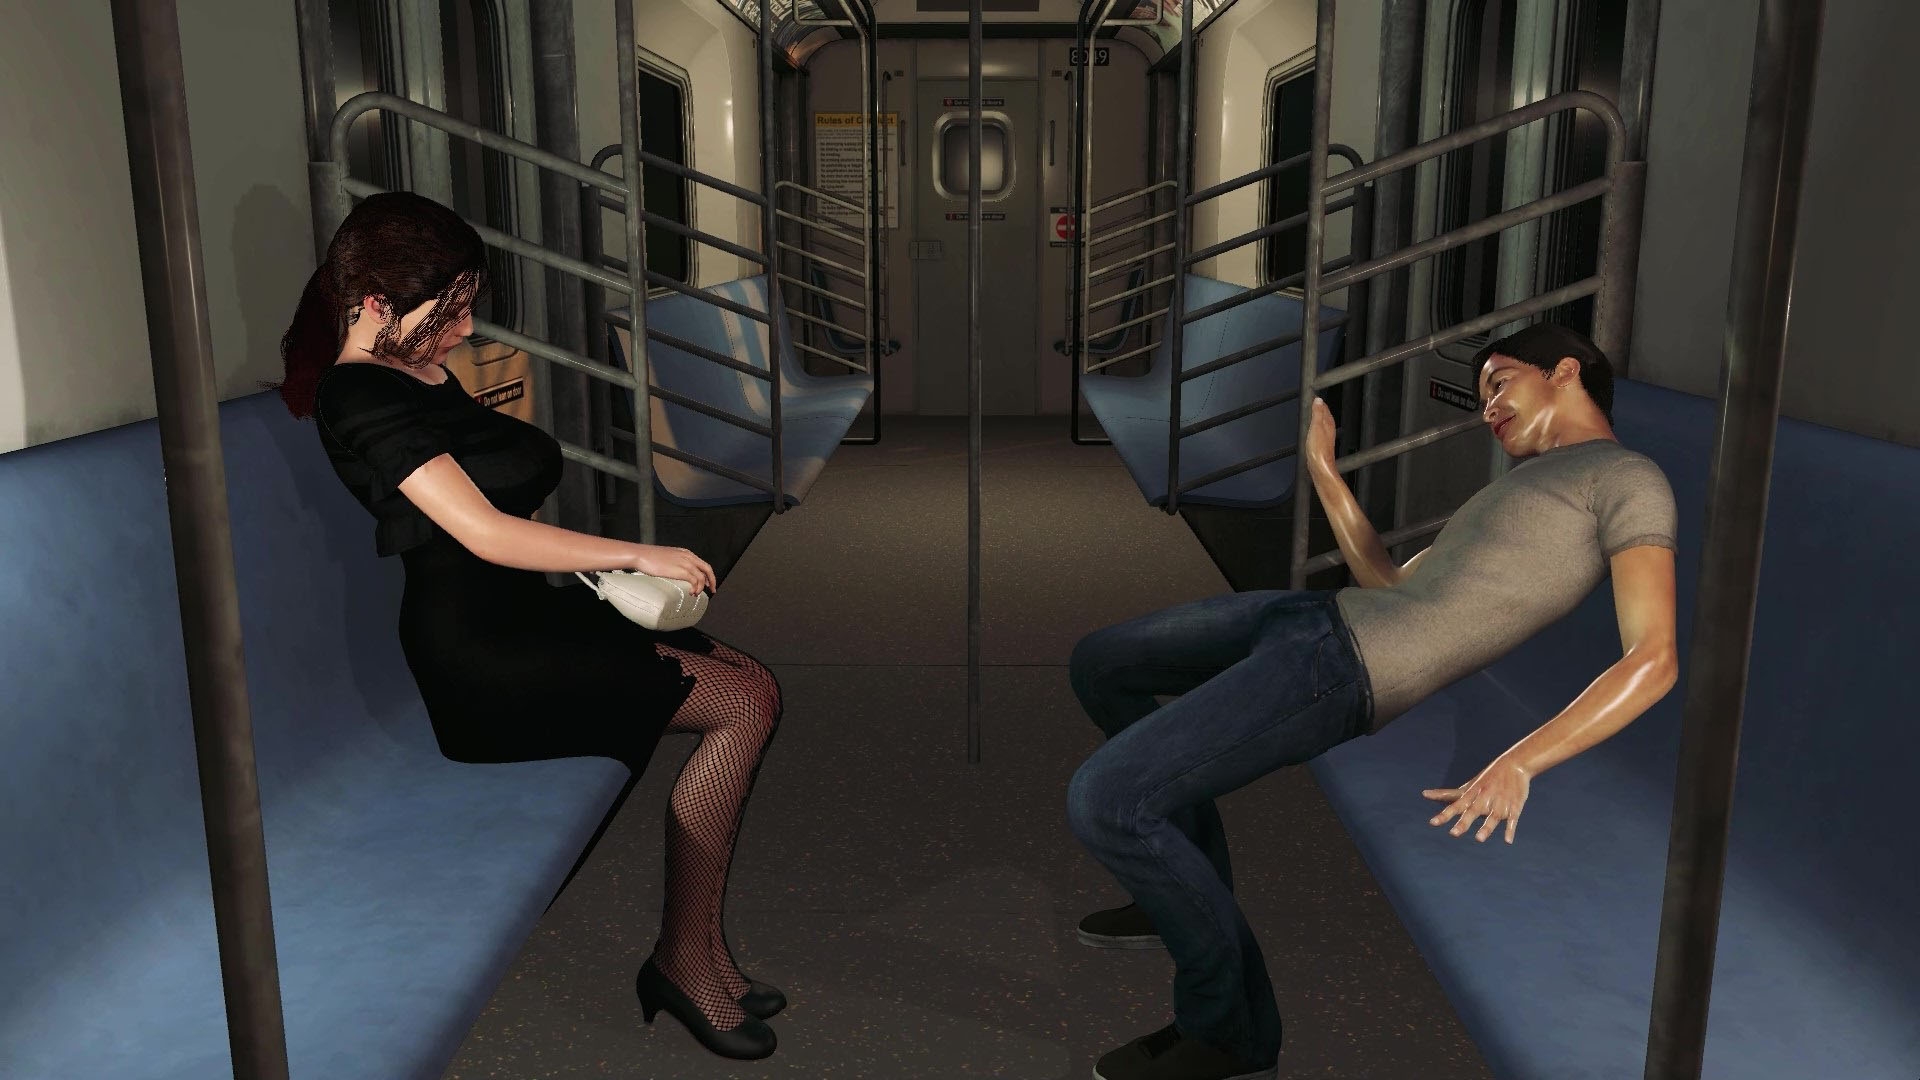 前の席の清楚なエロエロ熟女から誘惑されて、ヨダレを飲まされ電車内で騎乗位で逝く!「ロマンス・オン・ザ・トレイン」ボーナス動画付き!